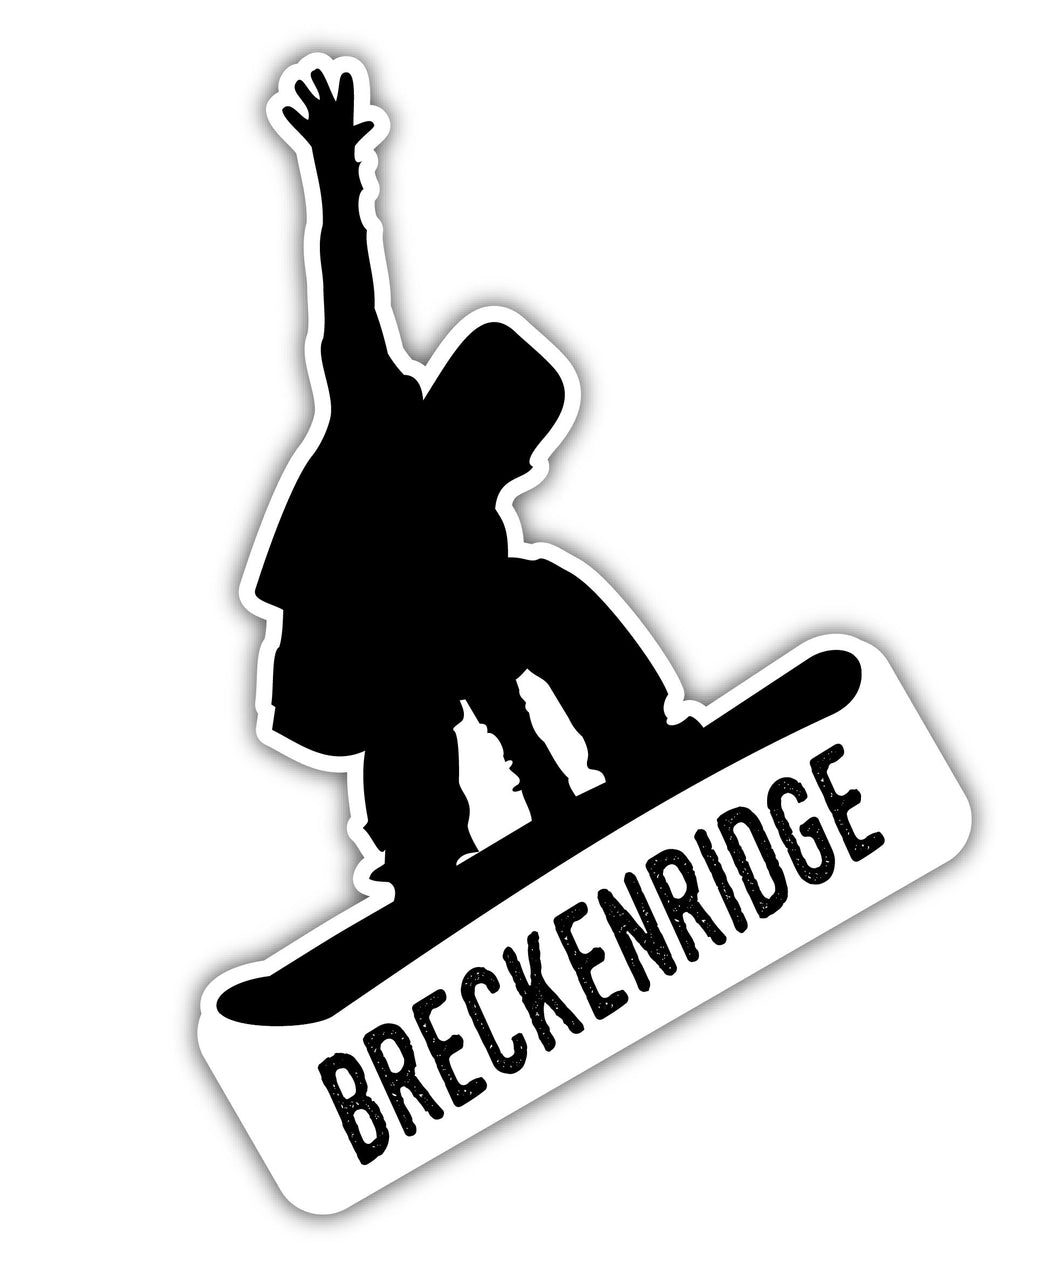 Breckenridge Colorado Ski Adventures Souvenir 4 Inch Vinyl Decal Sticker Board Design